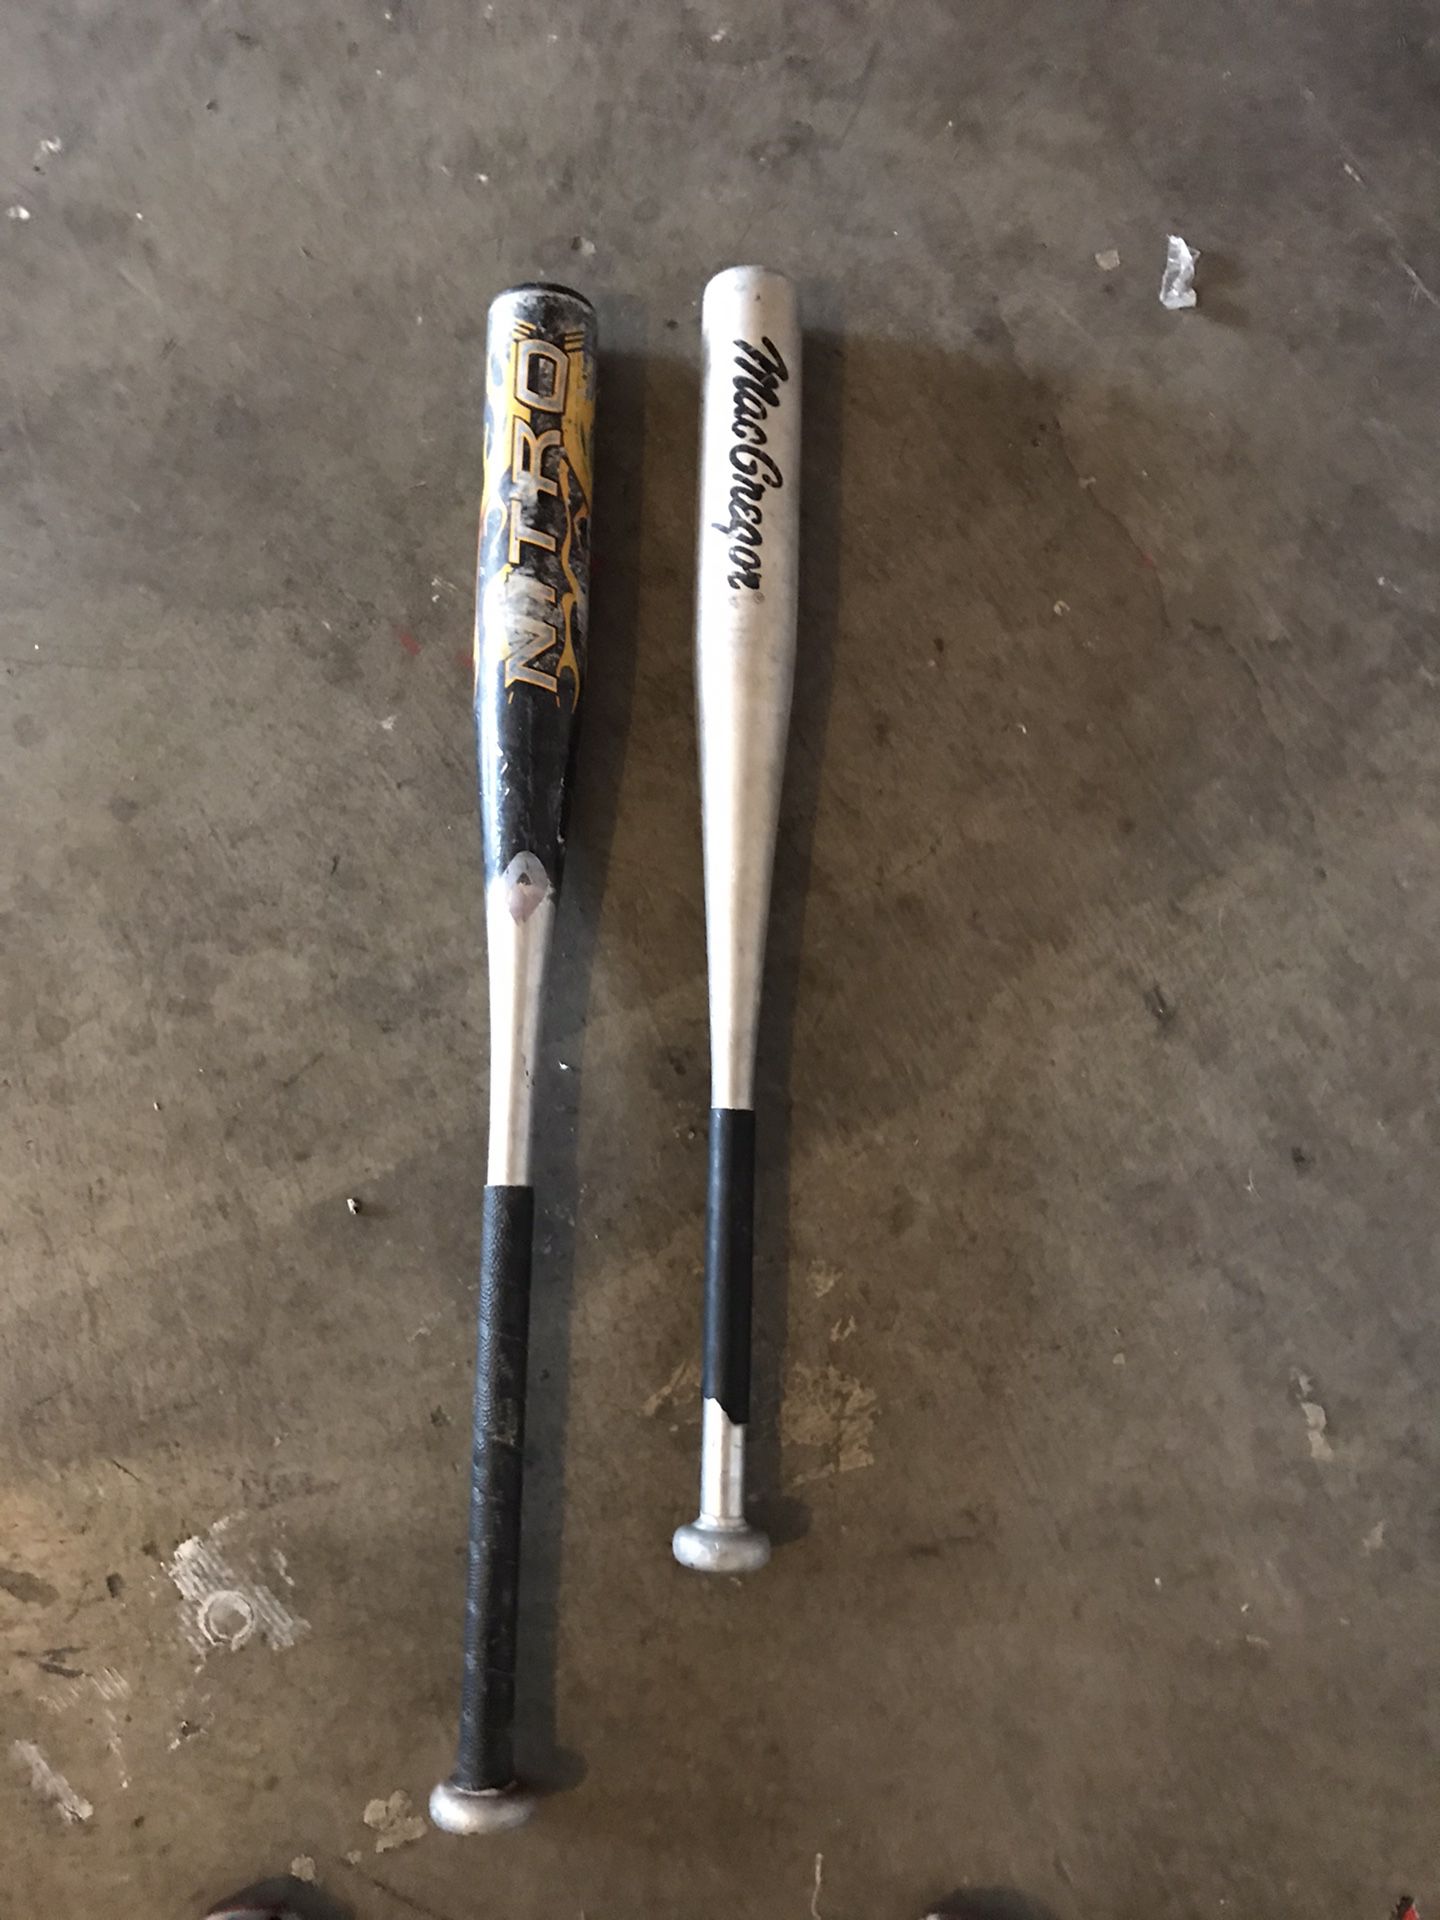 T ball baseball bats